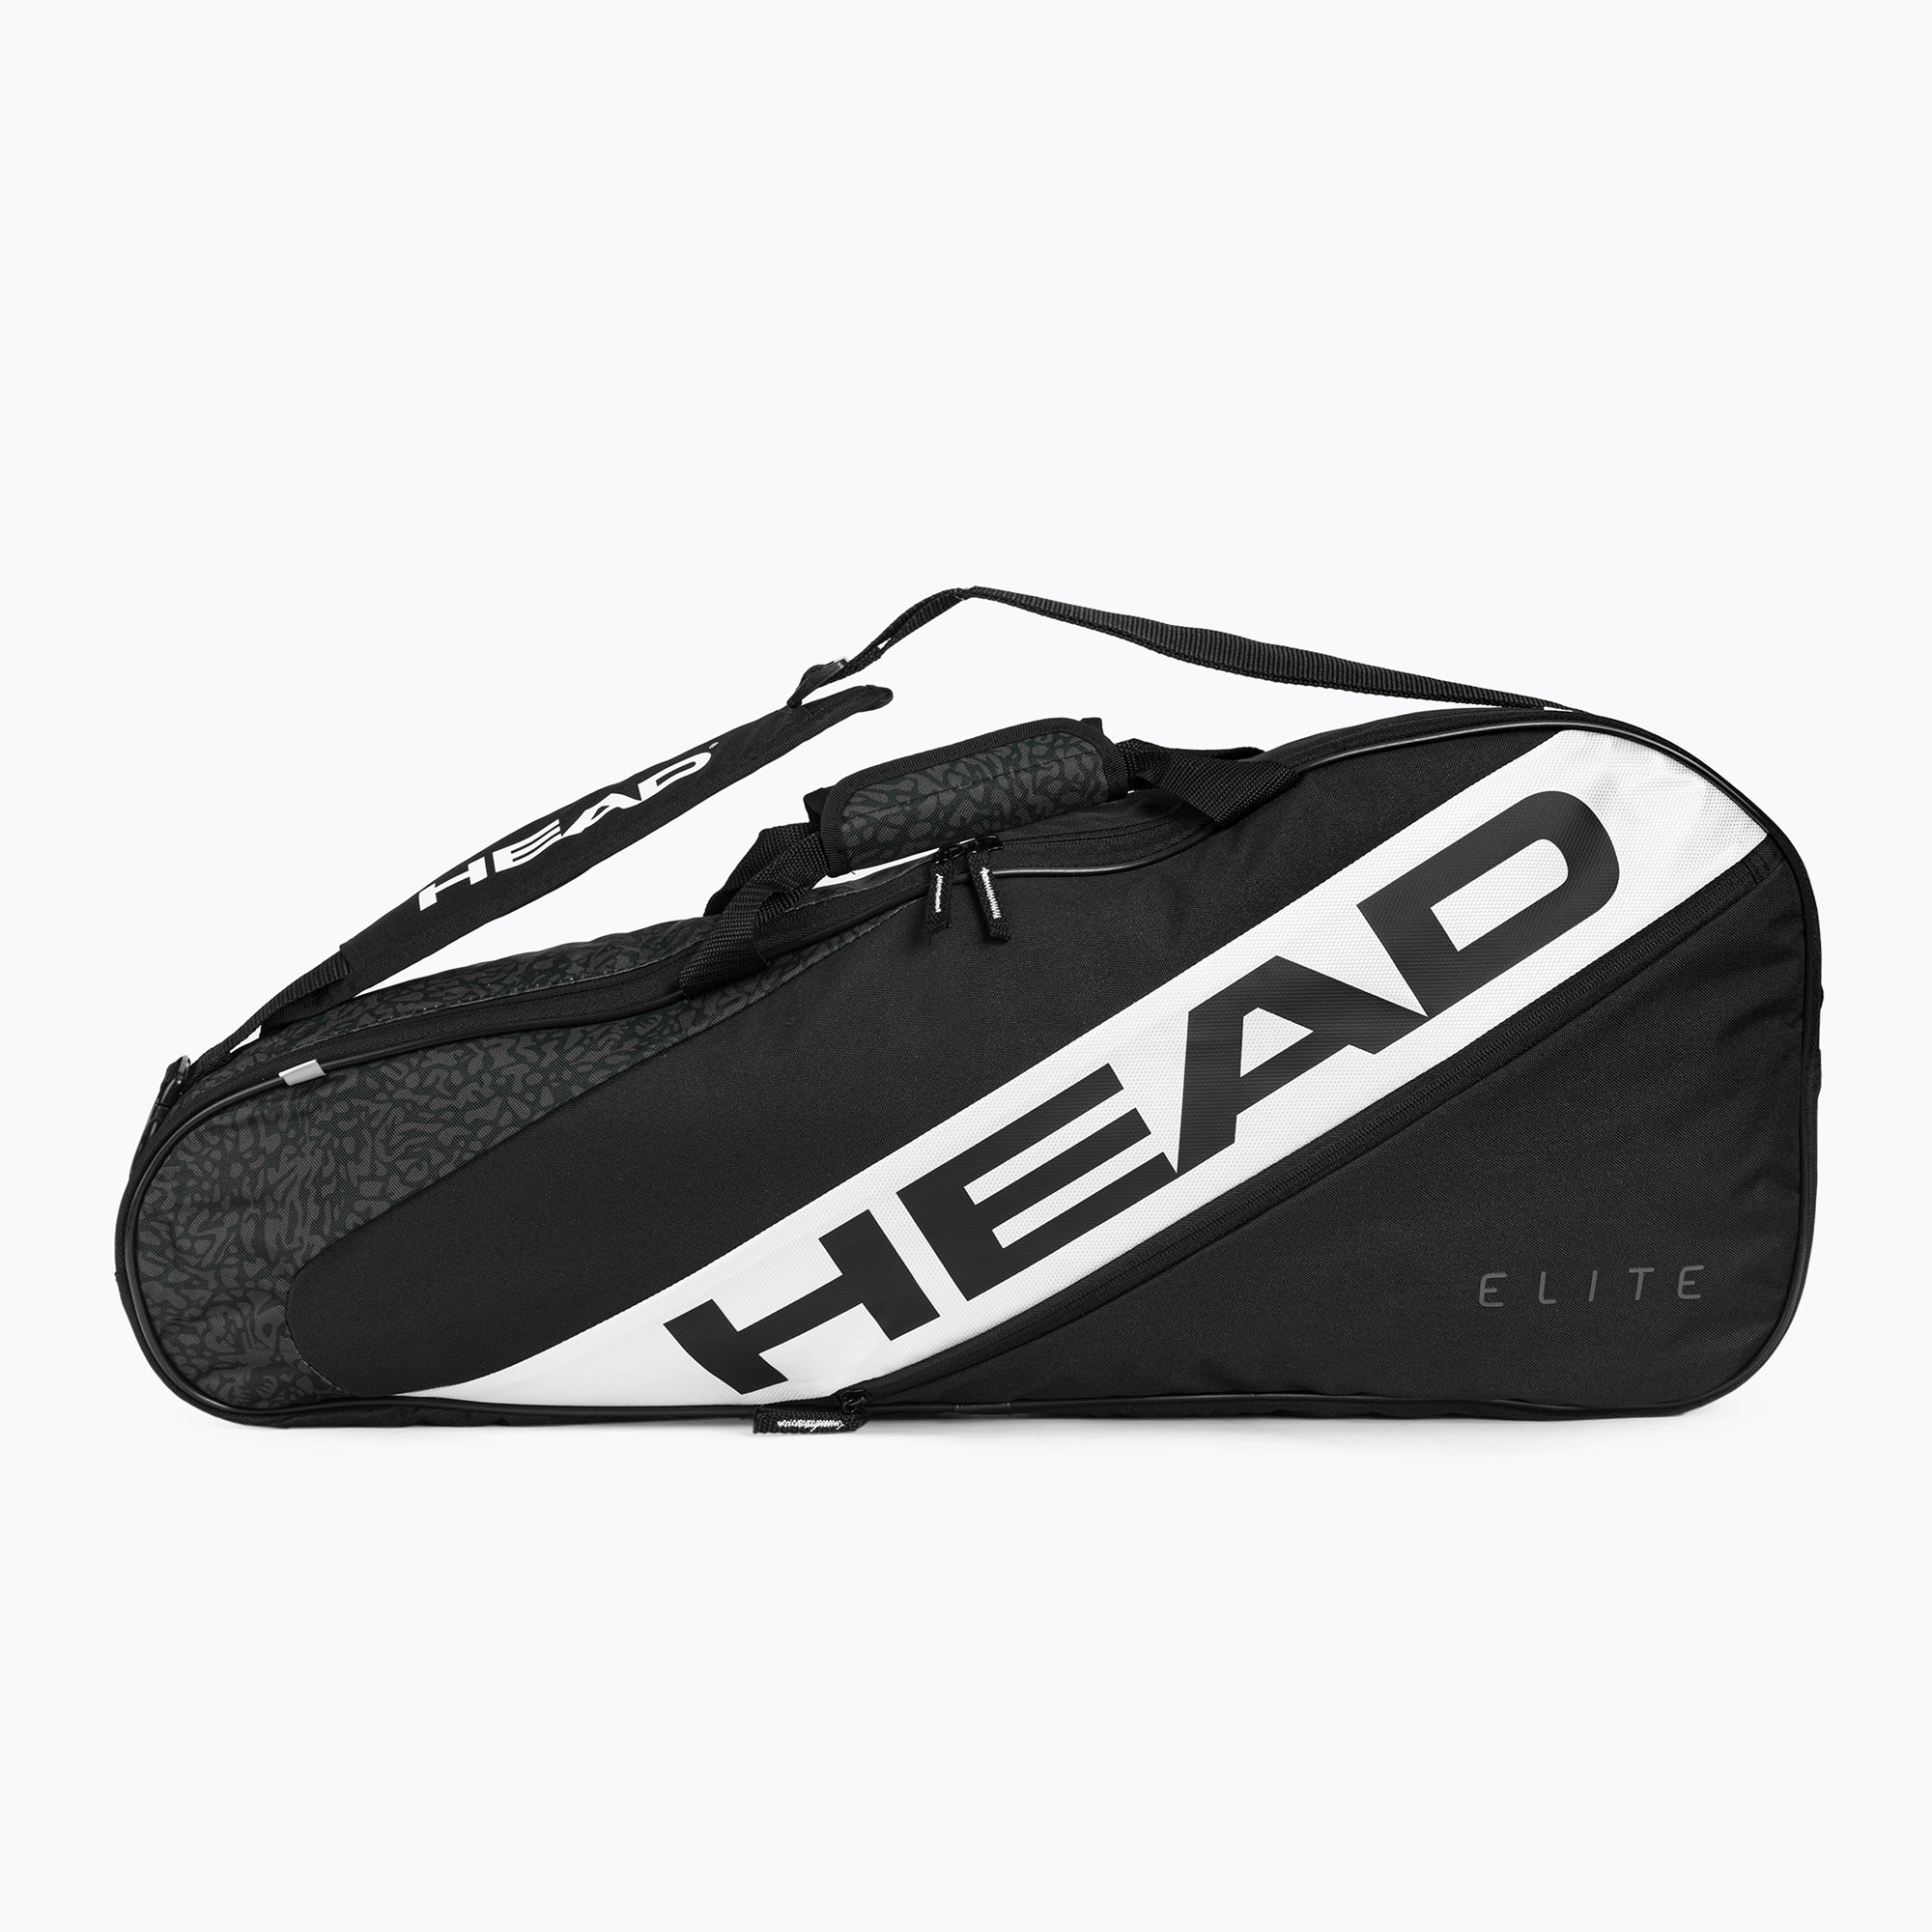 Geantă de tenis HEAD Elite 3R negru 283652